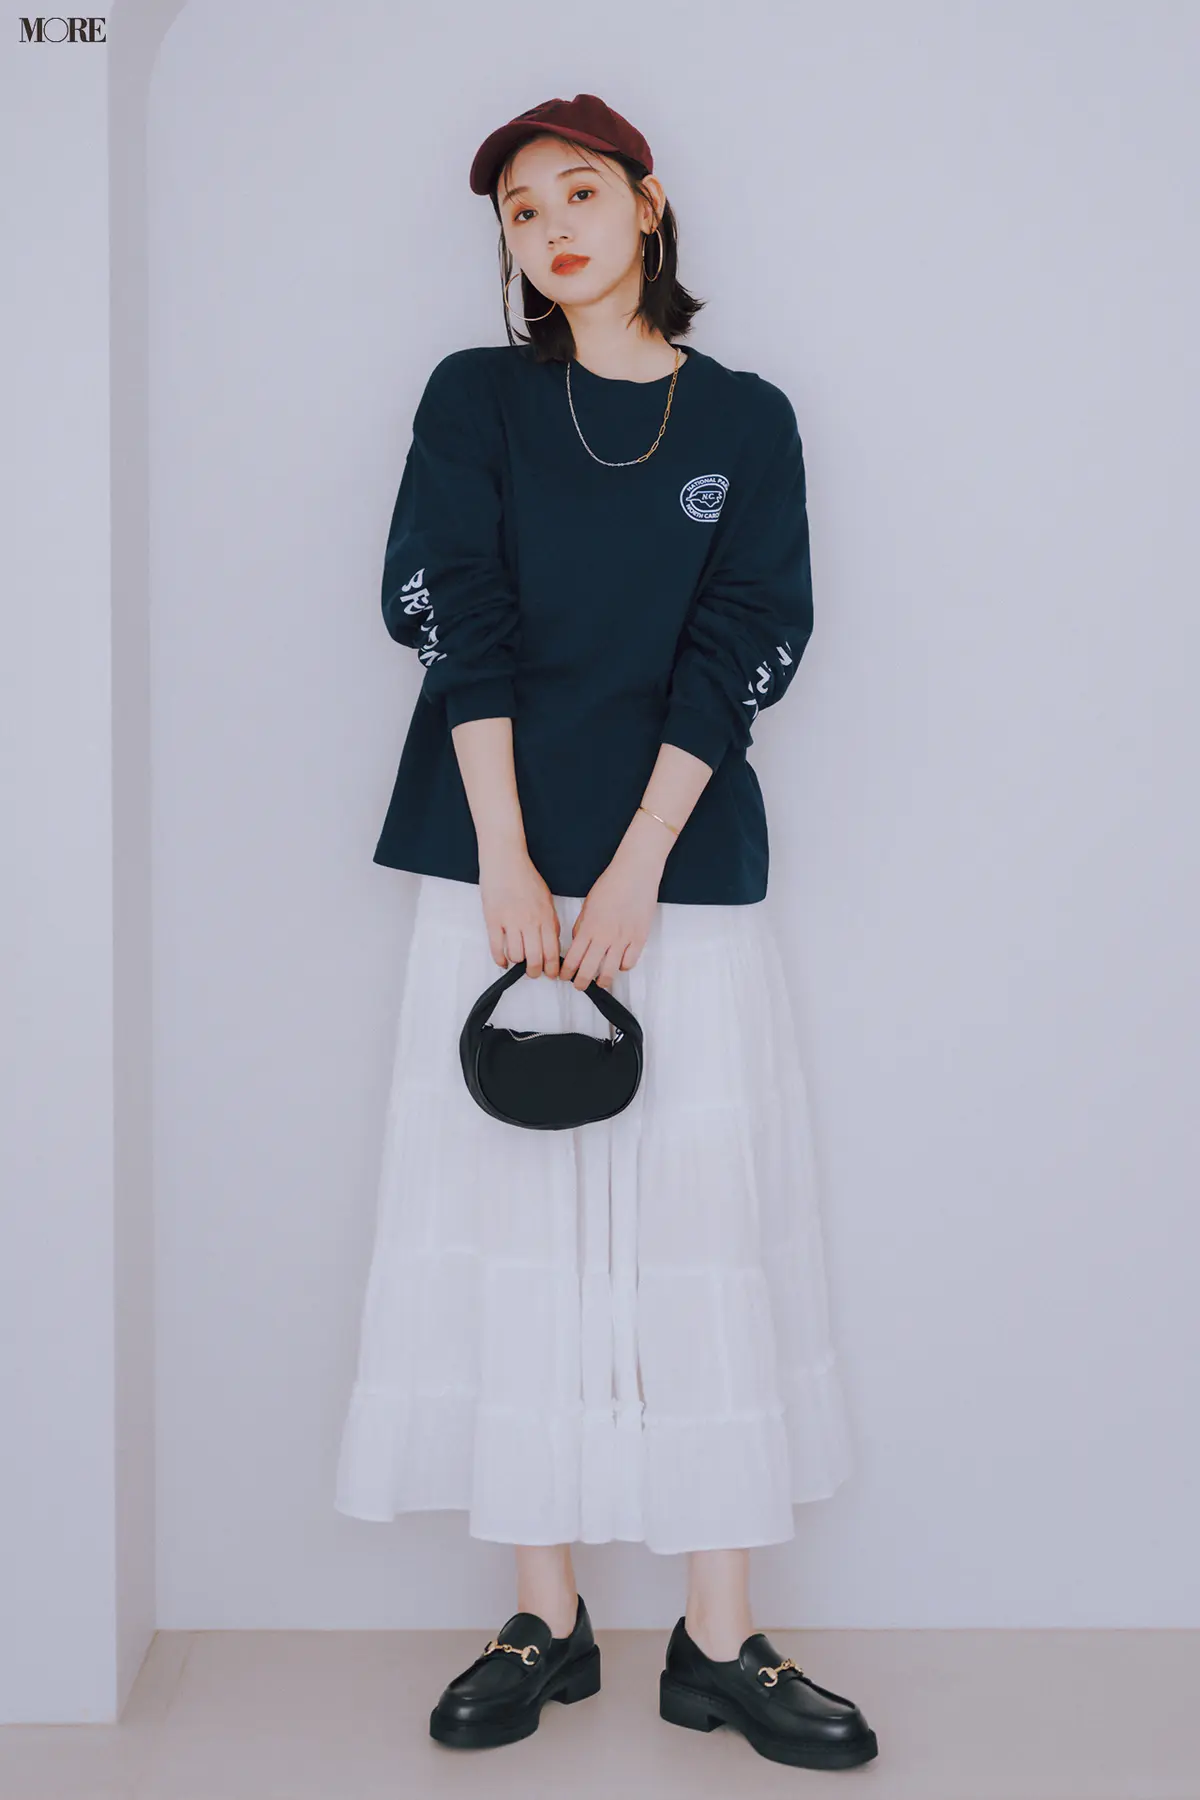 【今日のコーデ】黒ロンT×白フレアスカートに厚底ビットローファーを合わせた江野沢愛美